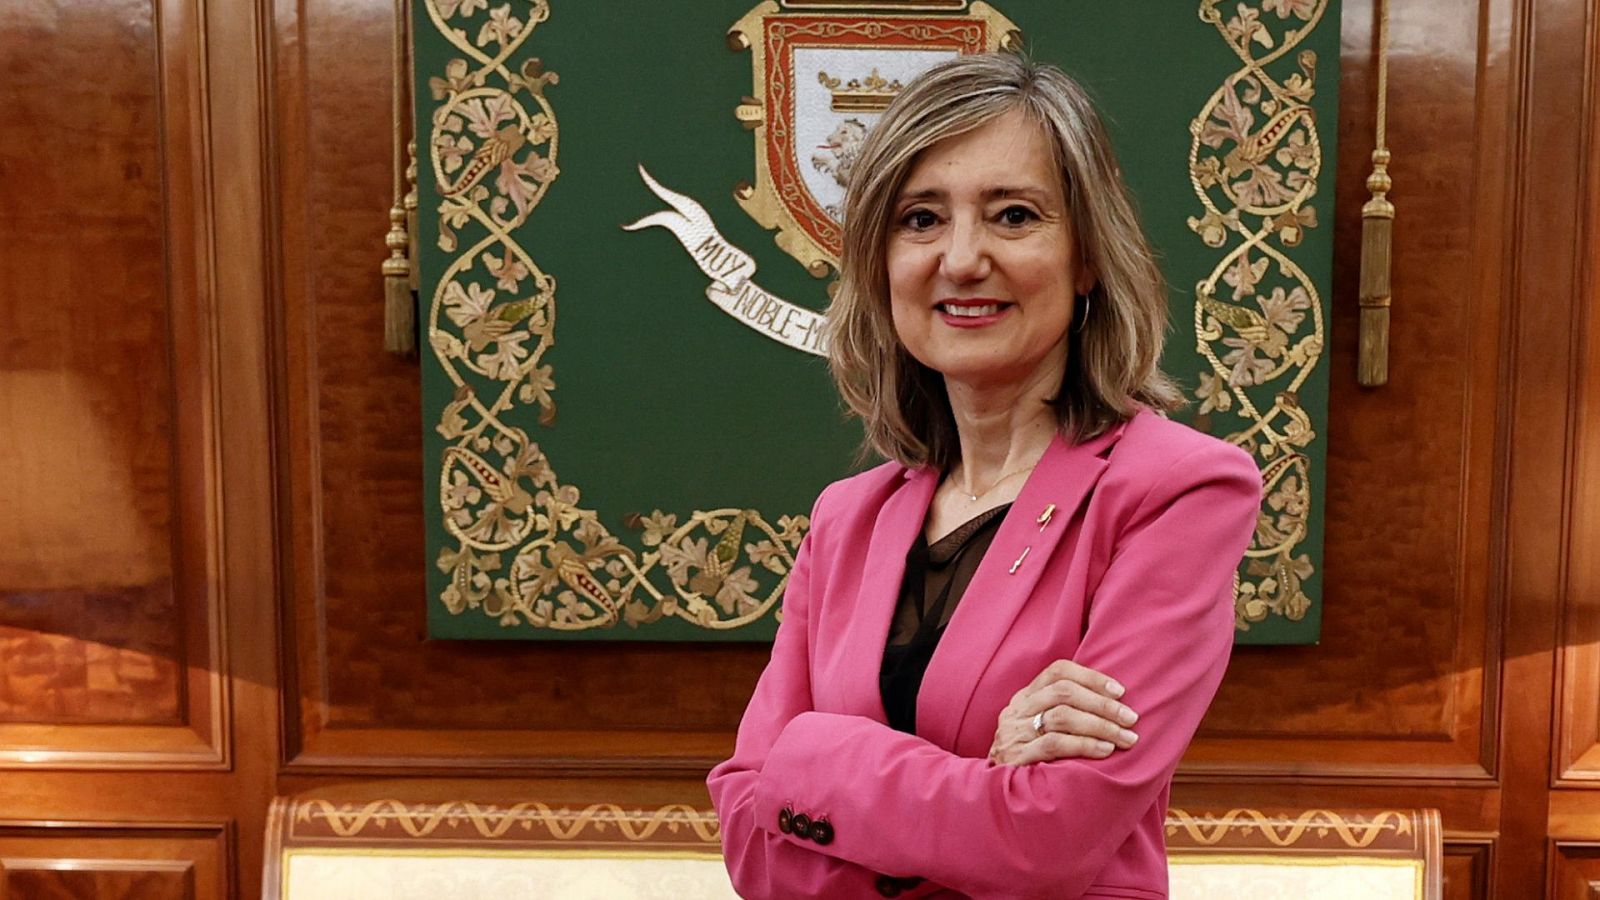 Cristina Ibarrola, alcaldesa de Pamplona: "Somos el escaparate al mundo durante nueve días" - Ver ahora